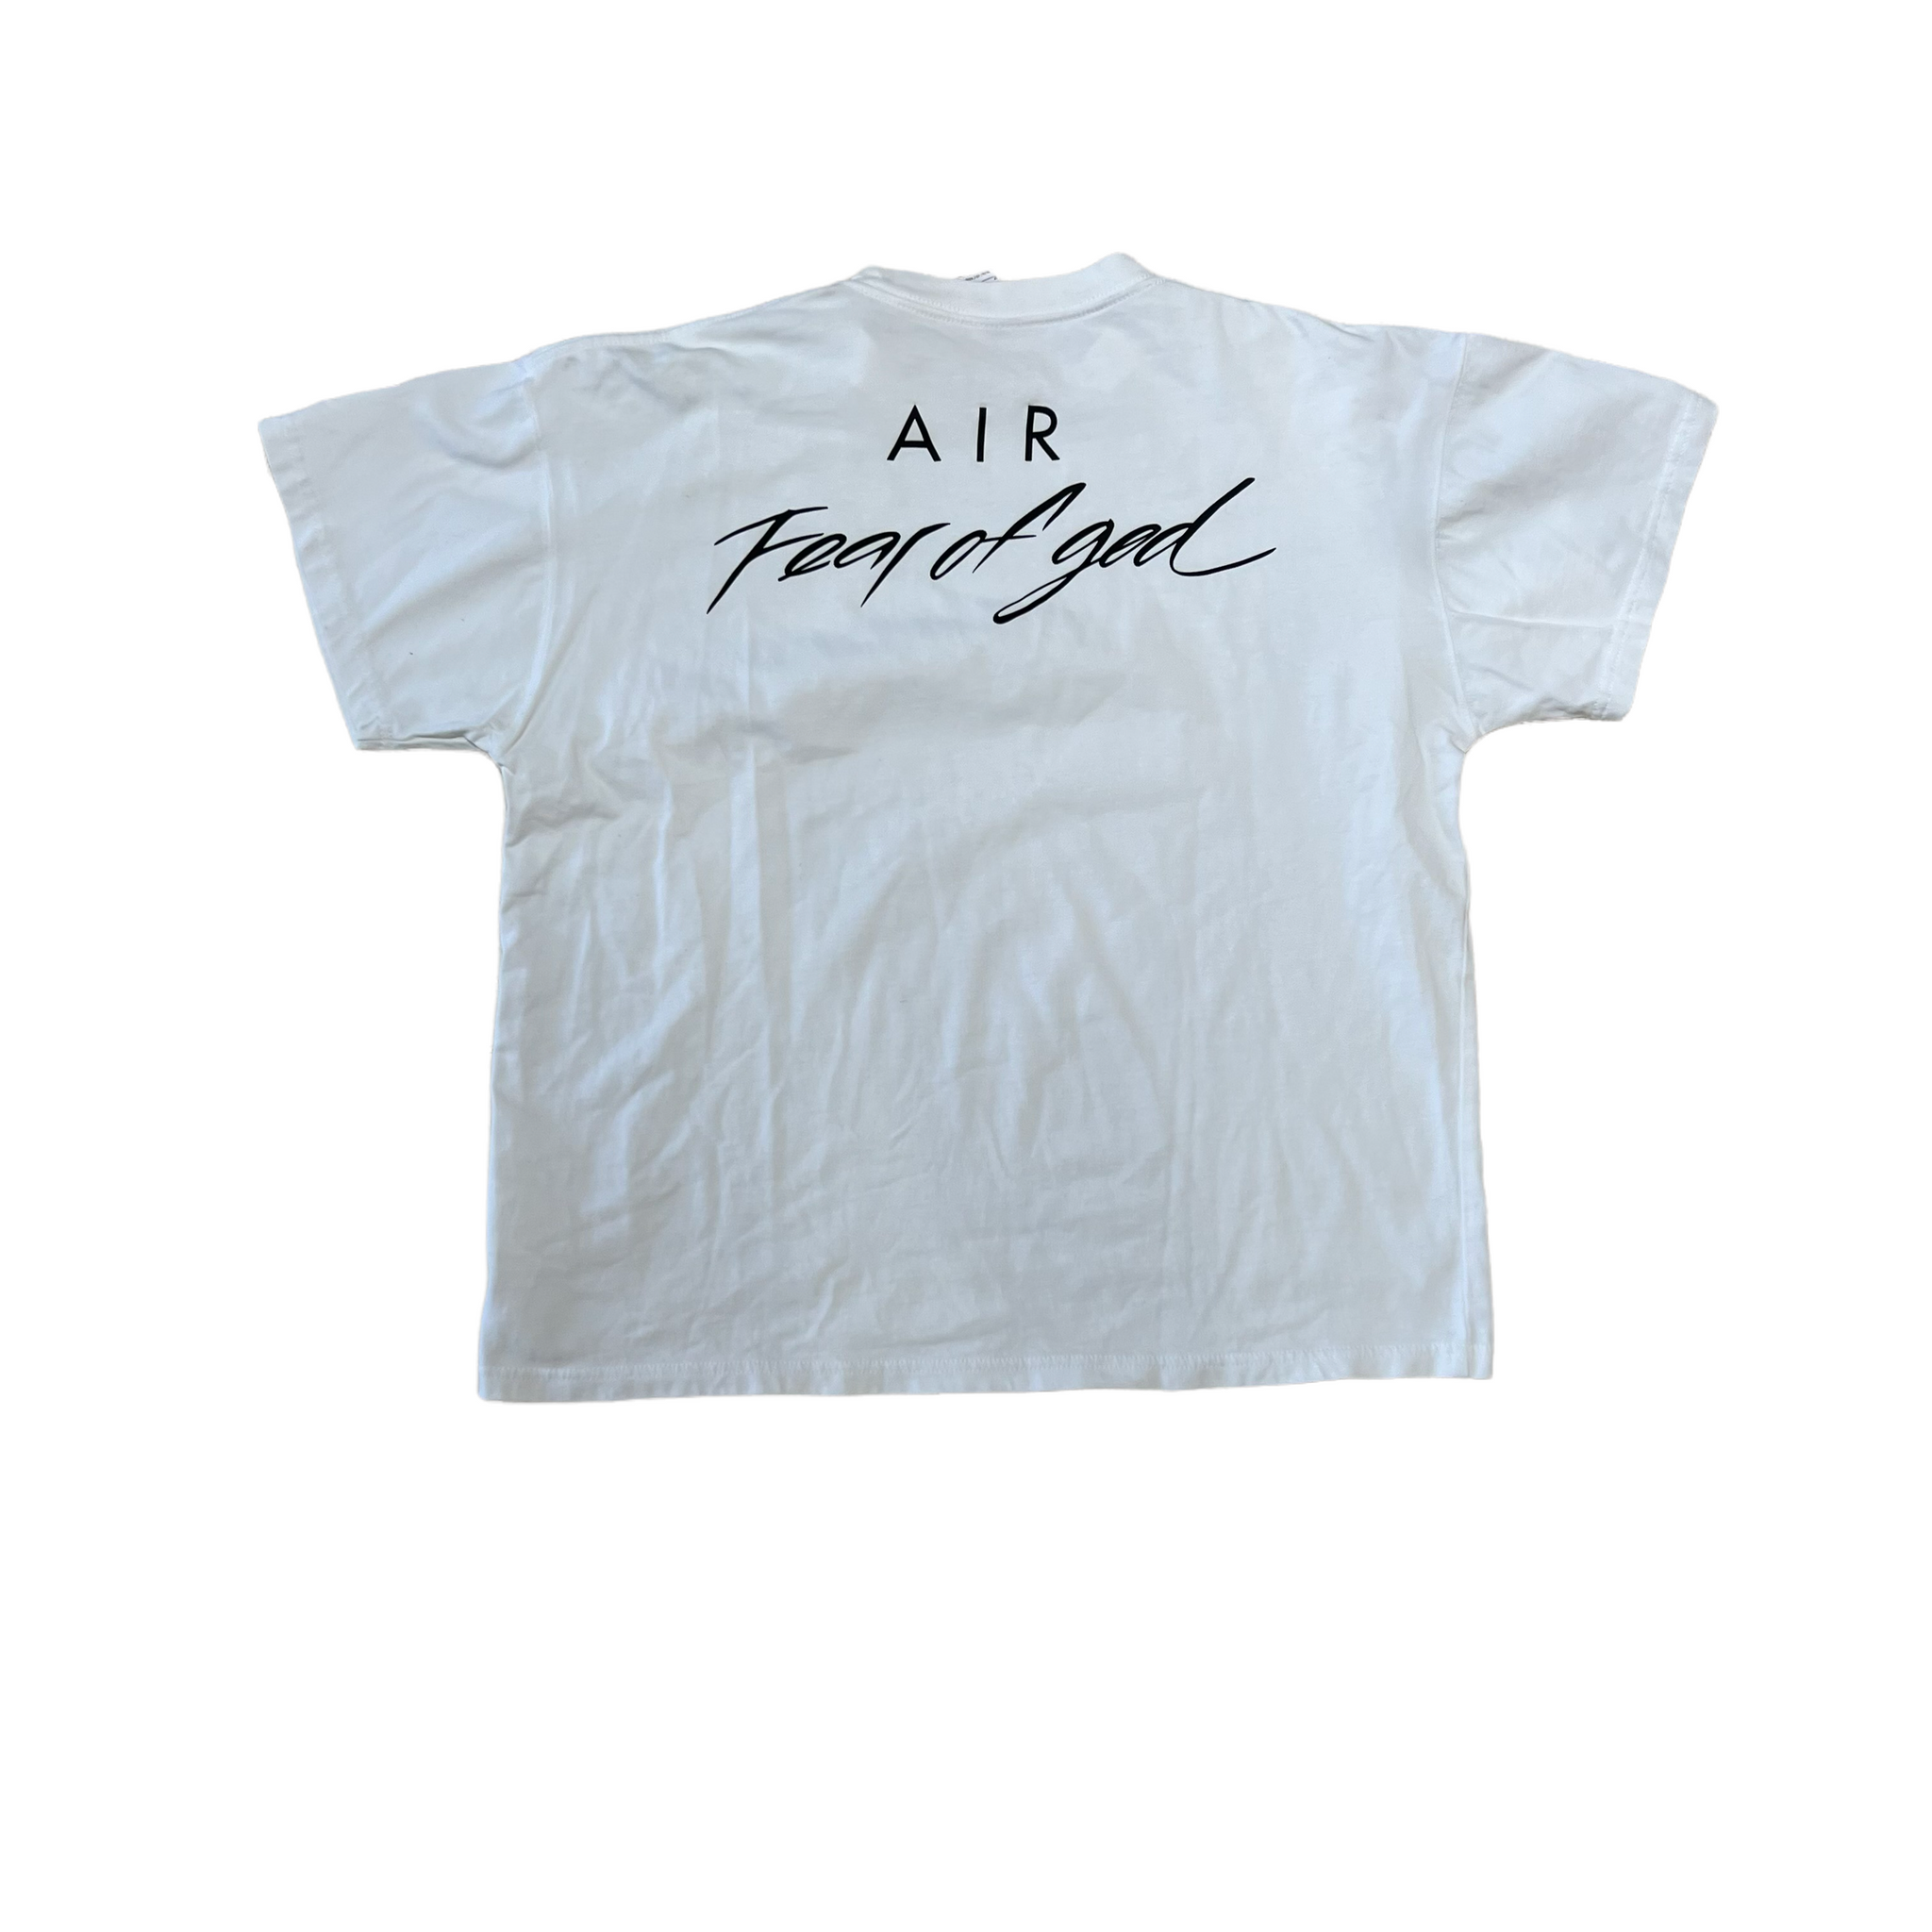 air fear of god shirt grey